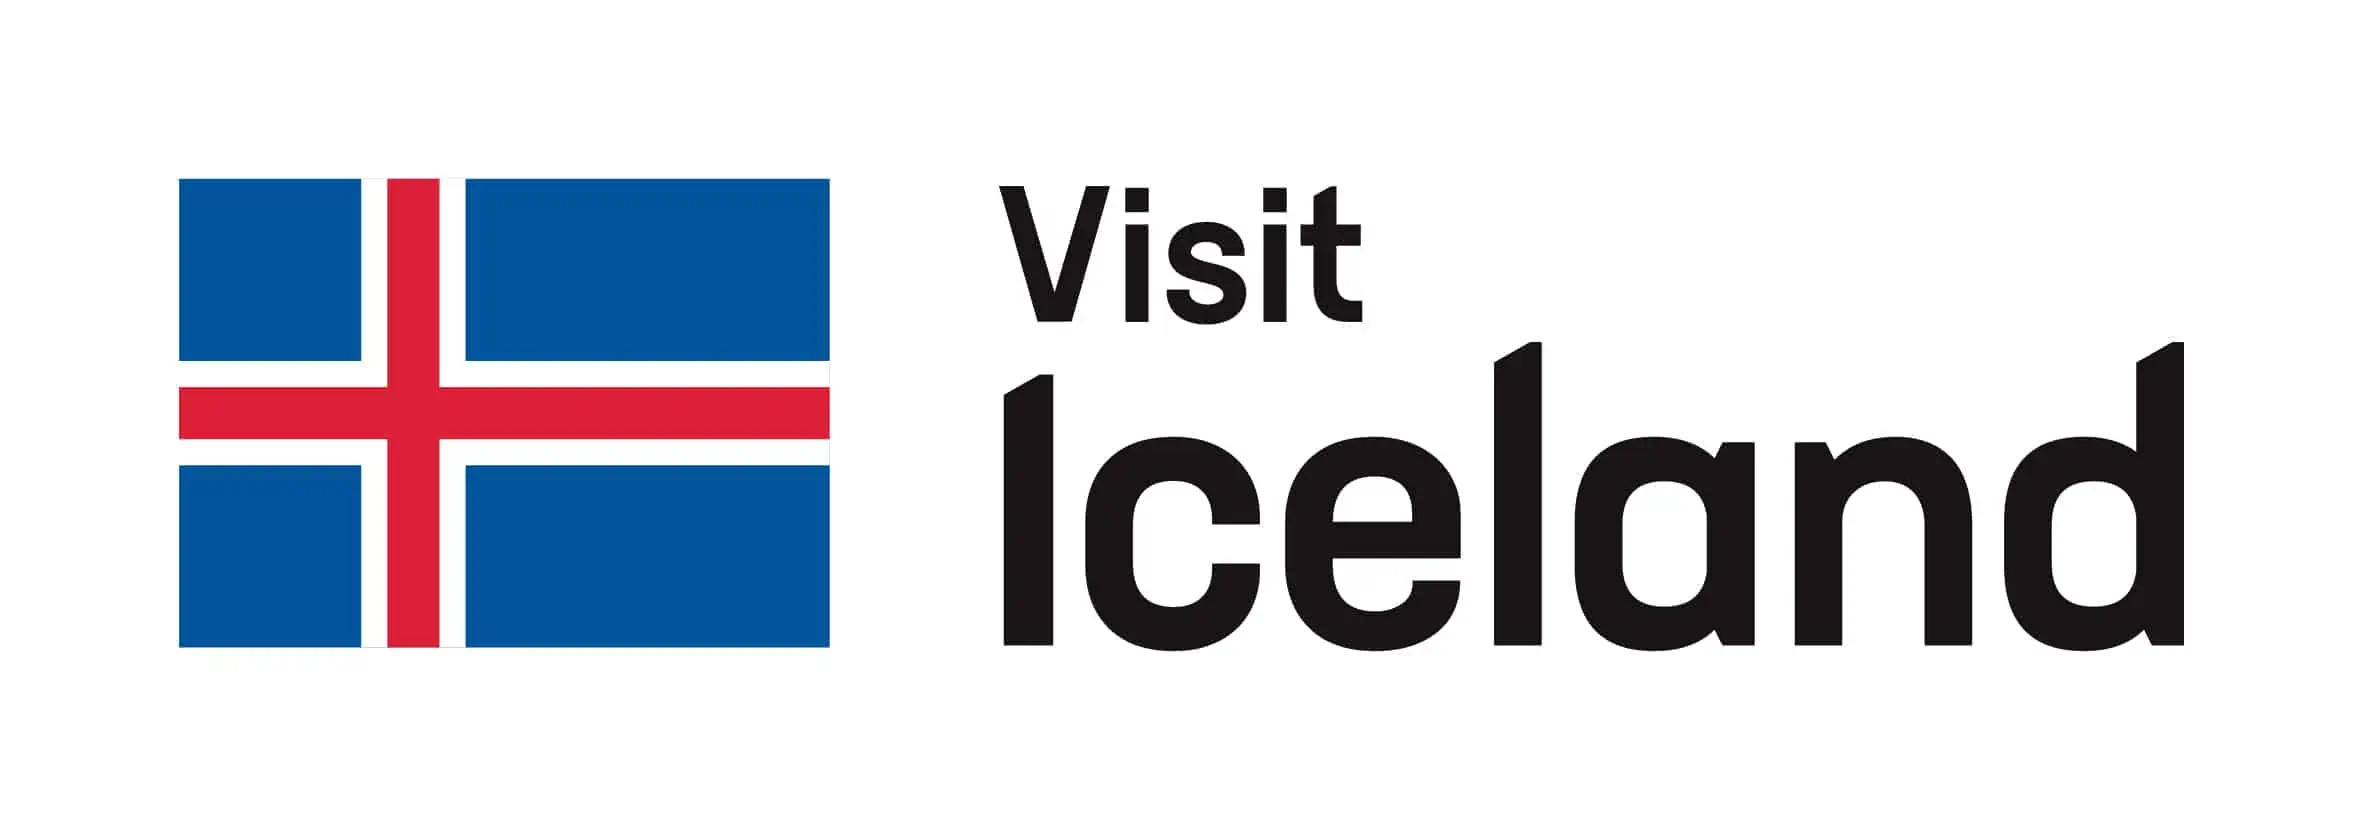 访问冰岛 保护套